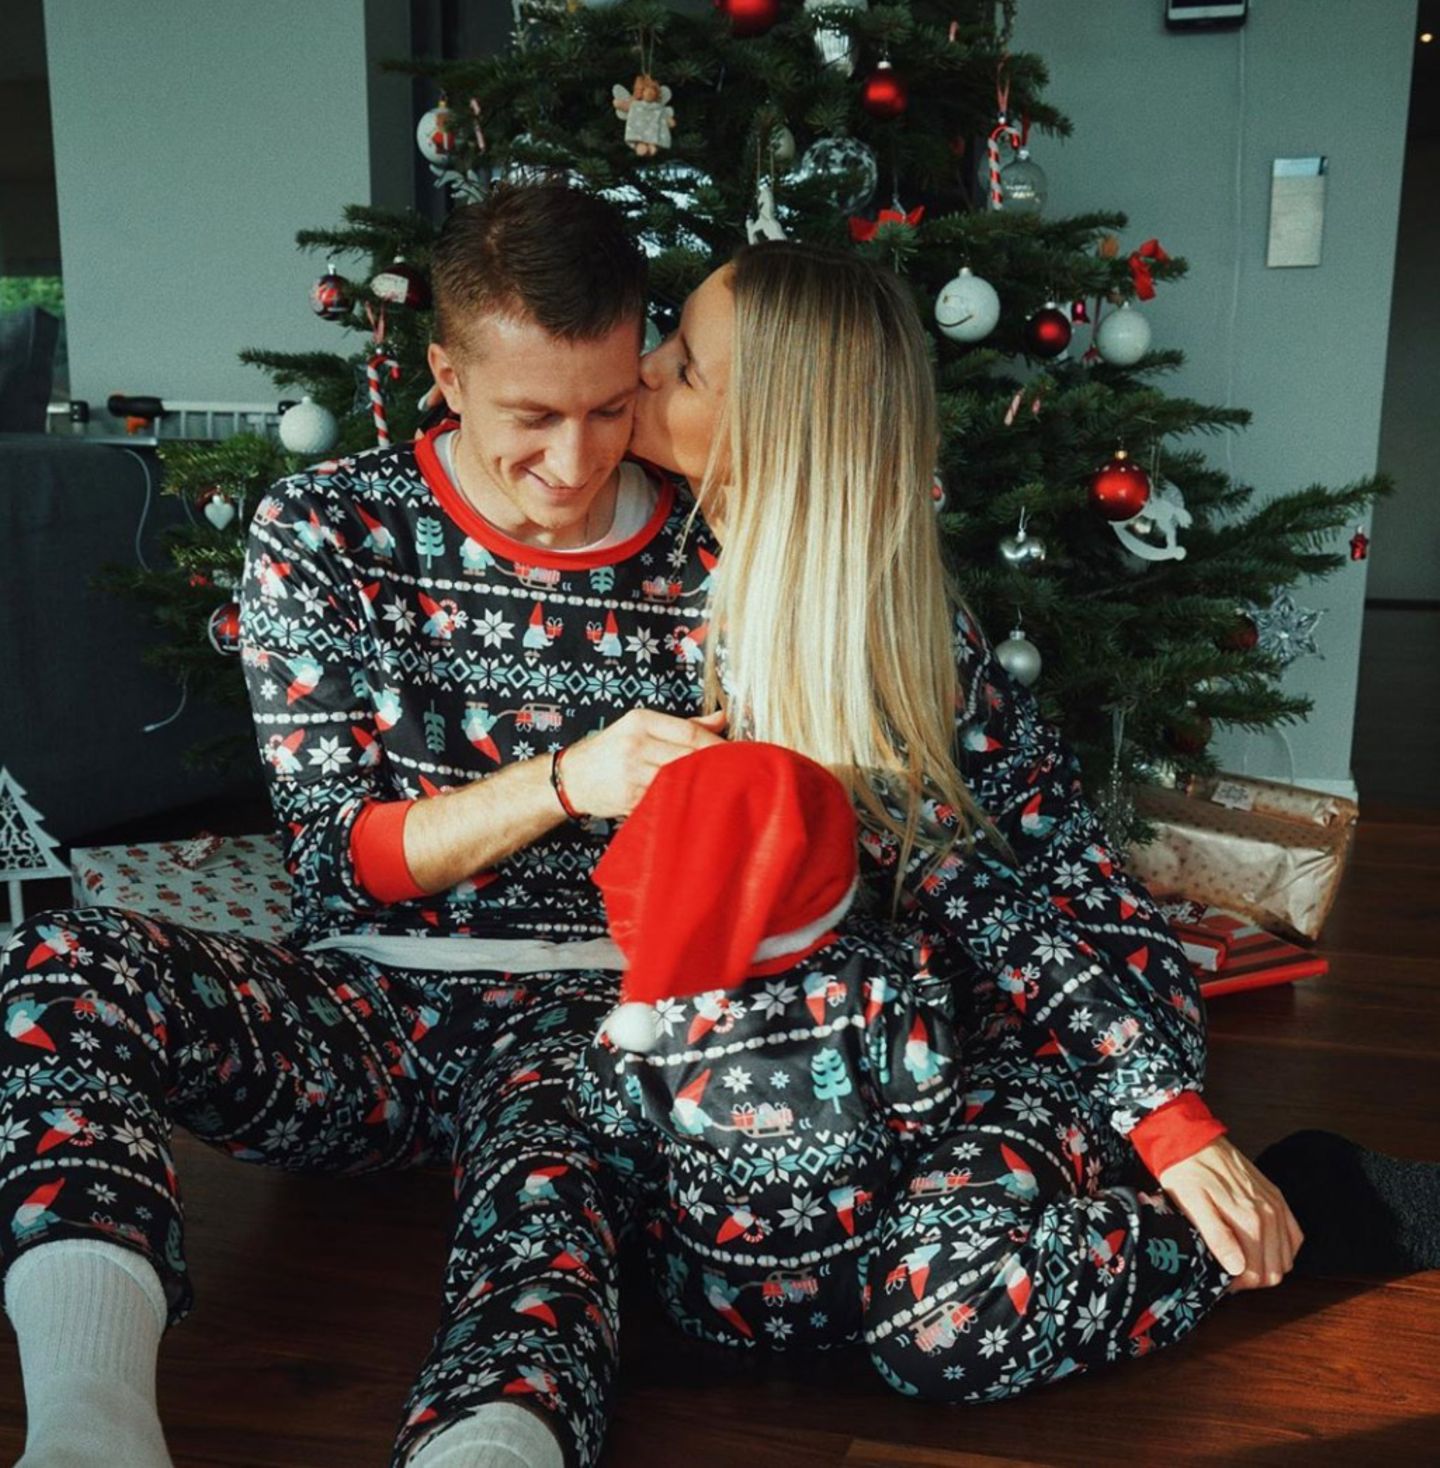 24. Dezember 2019  Im gemütlichen Feiertags-Familien-Outfit wünschen Scarlett Gartmann und Marco Reus ihren Fans fröhliche Weihnachtsgrüße via Instagram.